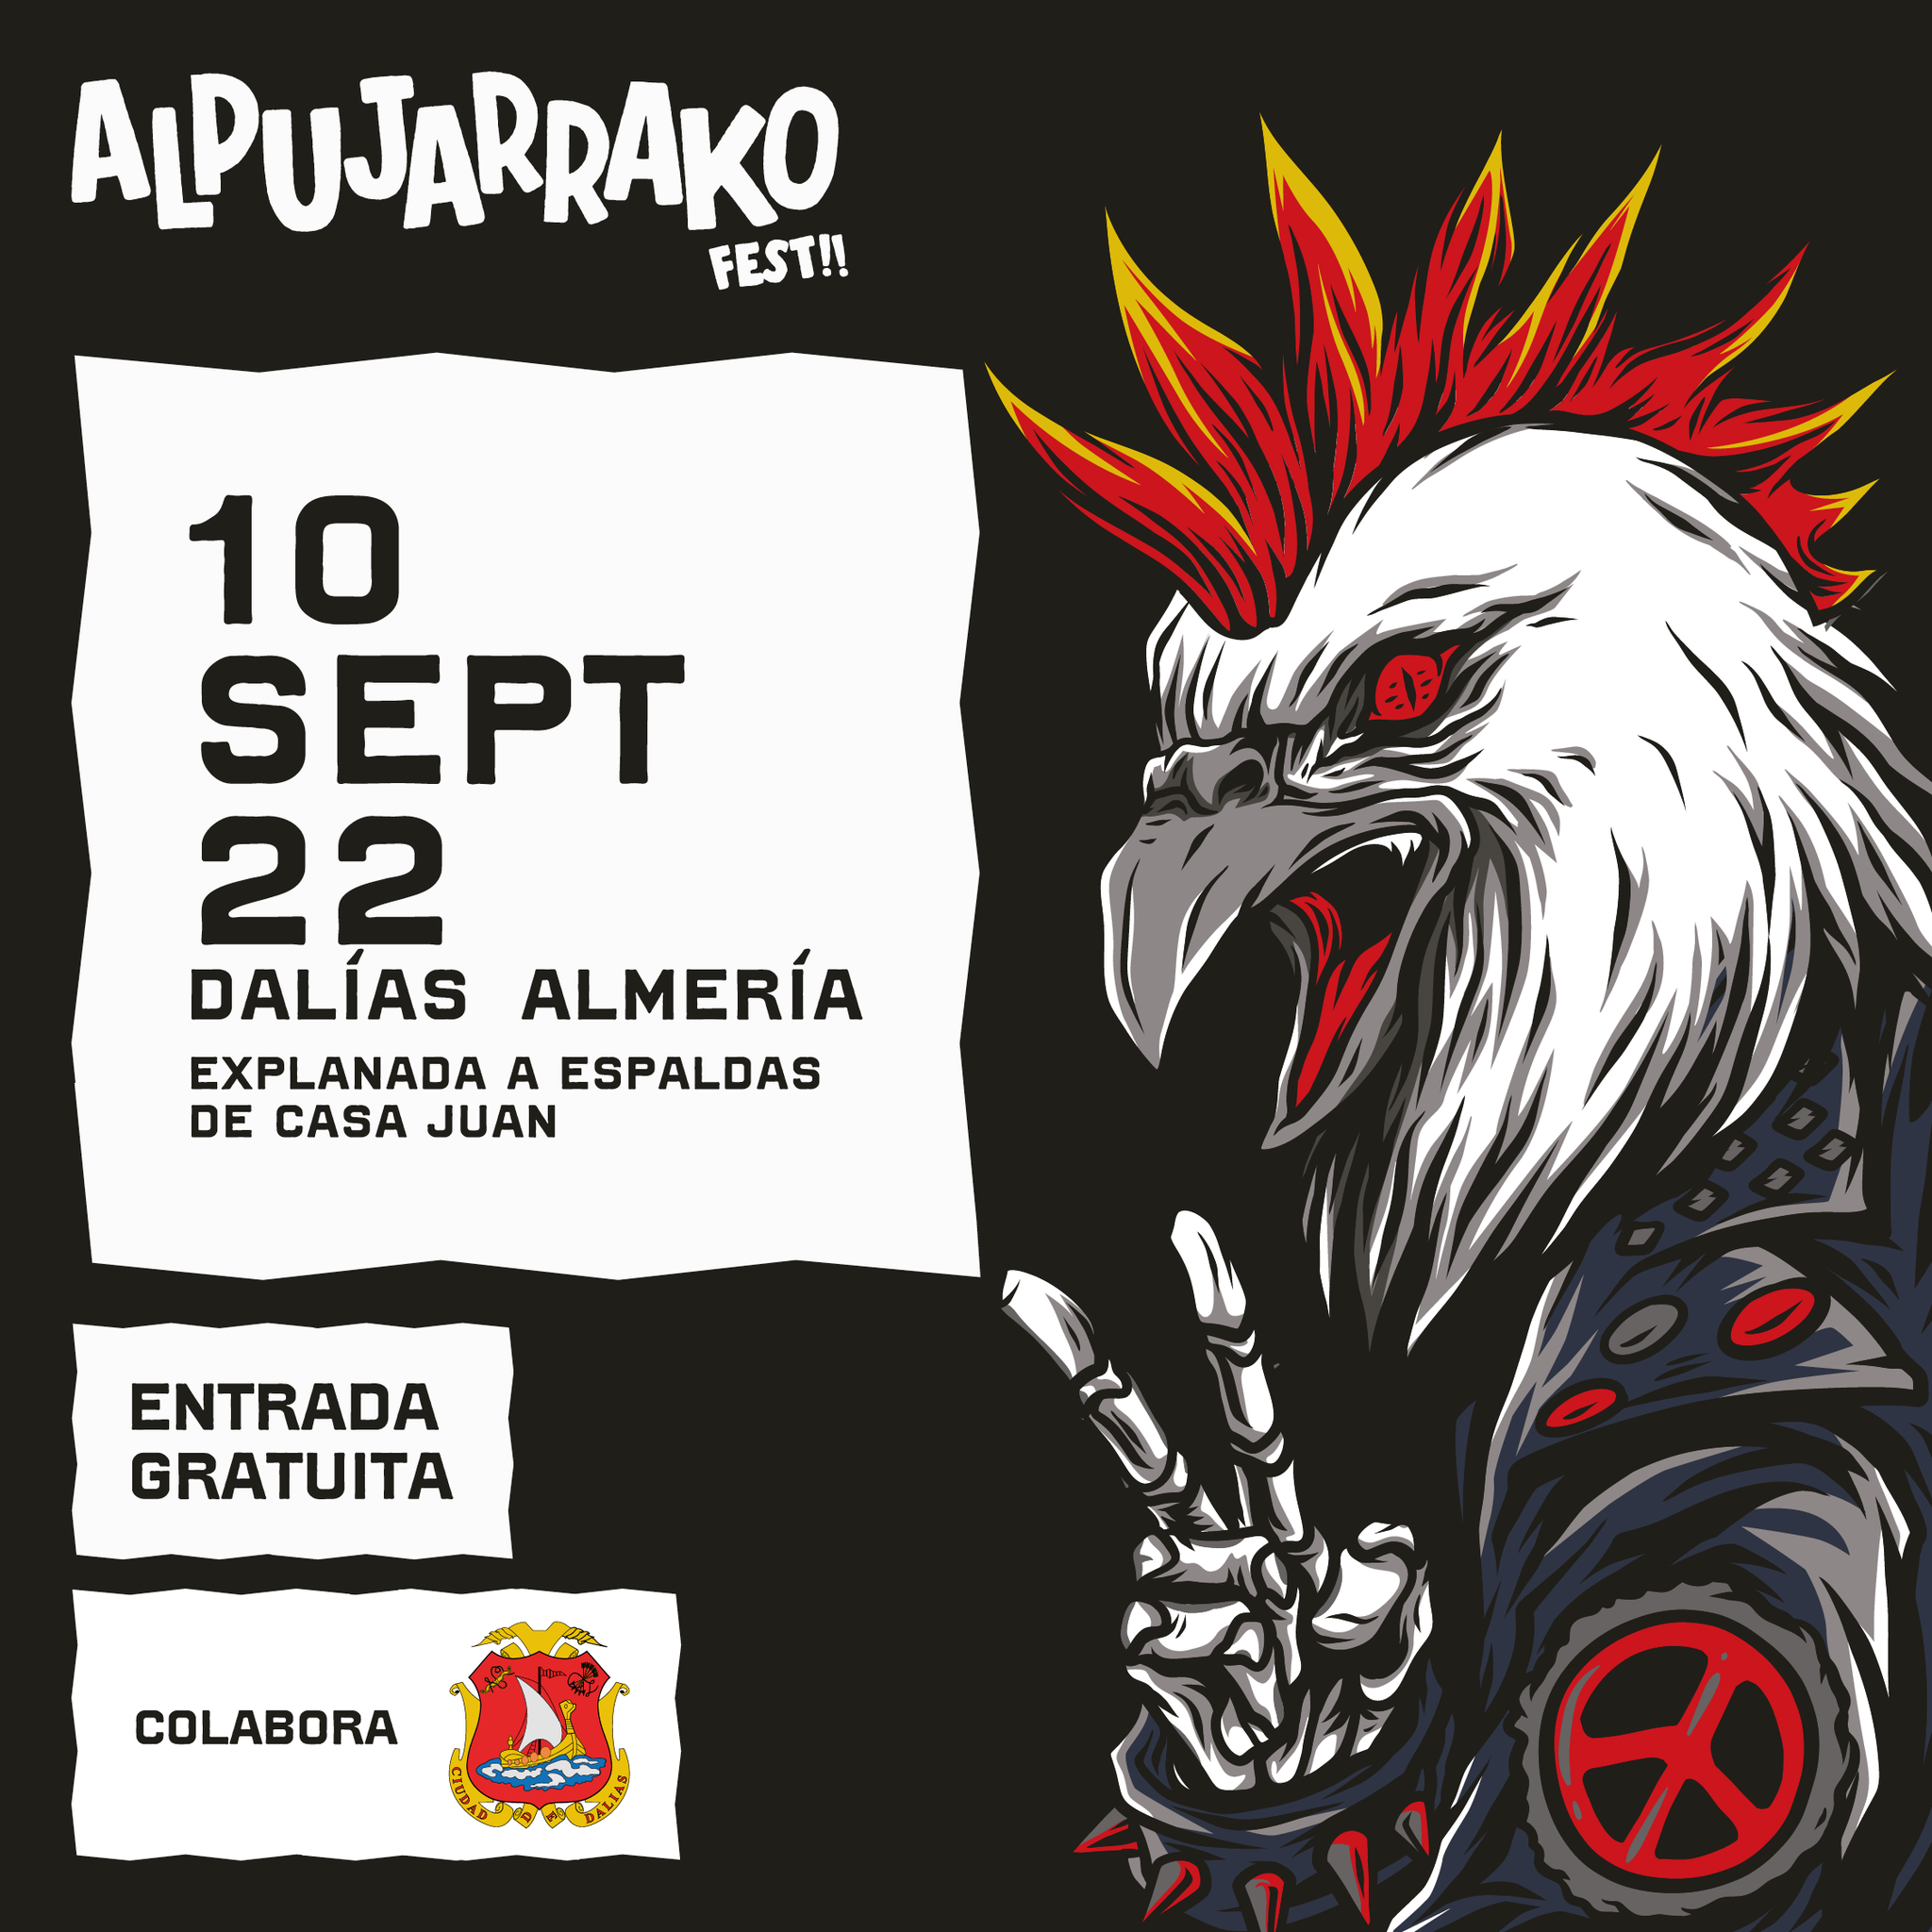 Primera tanda de confirmaciones para el Alpujarrako Fest de Dalías